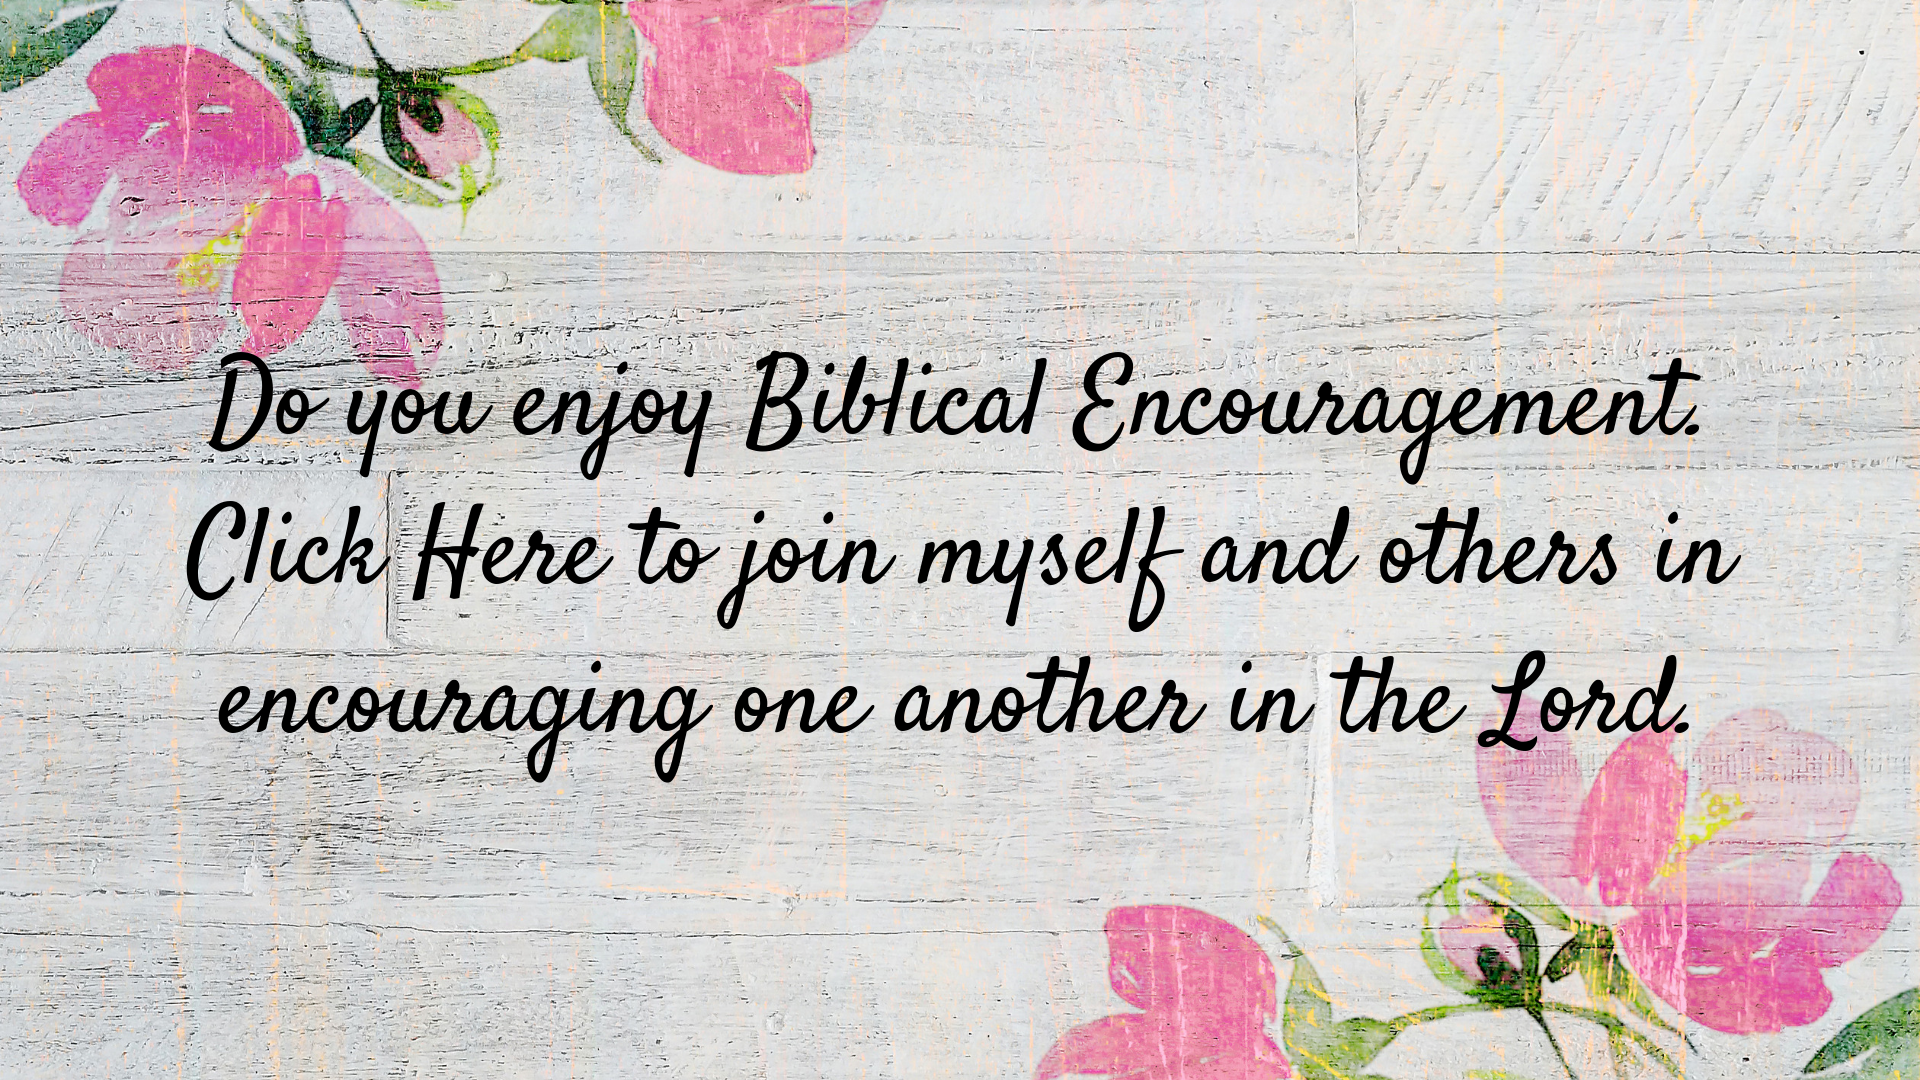 Biblical Encouragement in your inbox